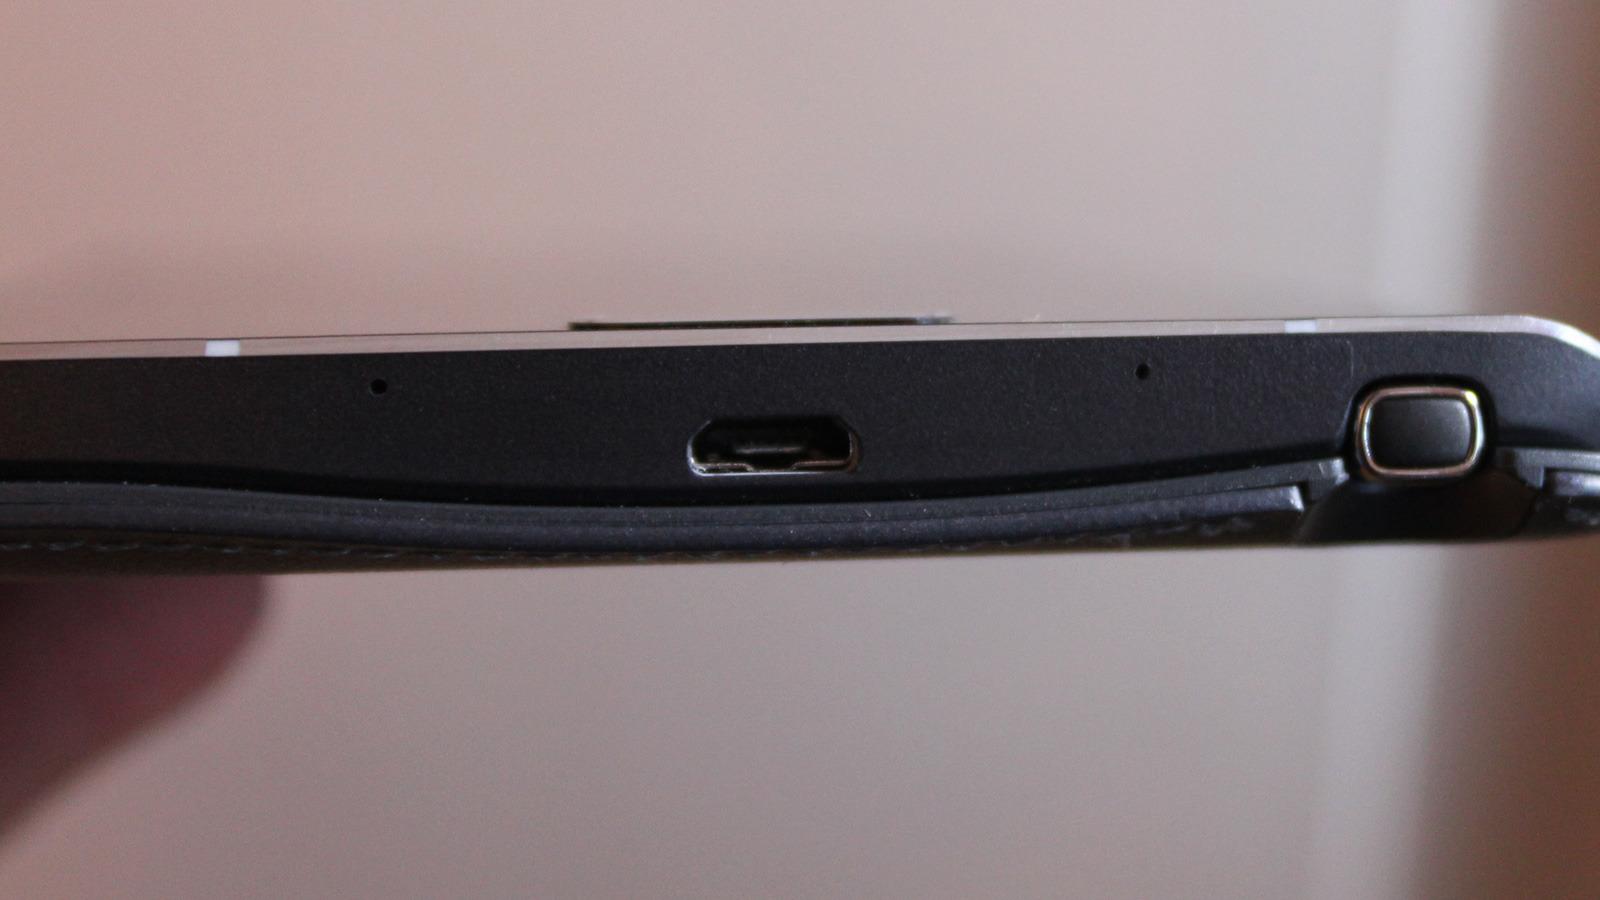 Samsung har gått tilbake til den vanlige USB-porten.Foto: Espen Irwing Swang, Tek.no